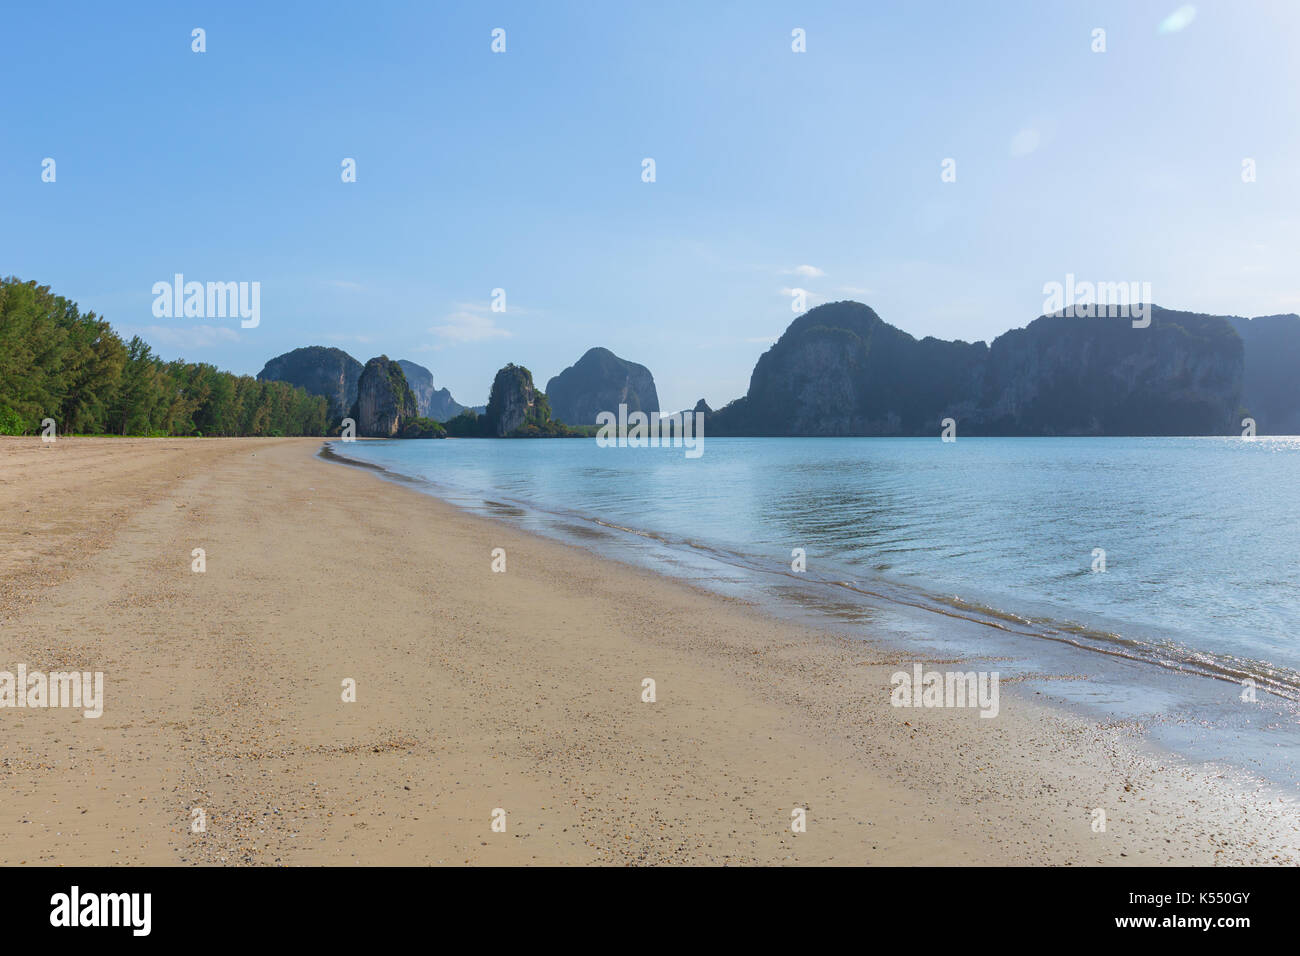 Thailand ist und das Meer Strand sand sun Tageslicht Berglandschaft für Design Postkarten und Kalender Hintergrund. Stockfoto